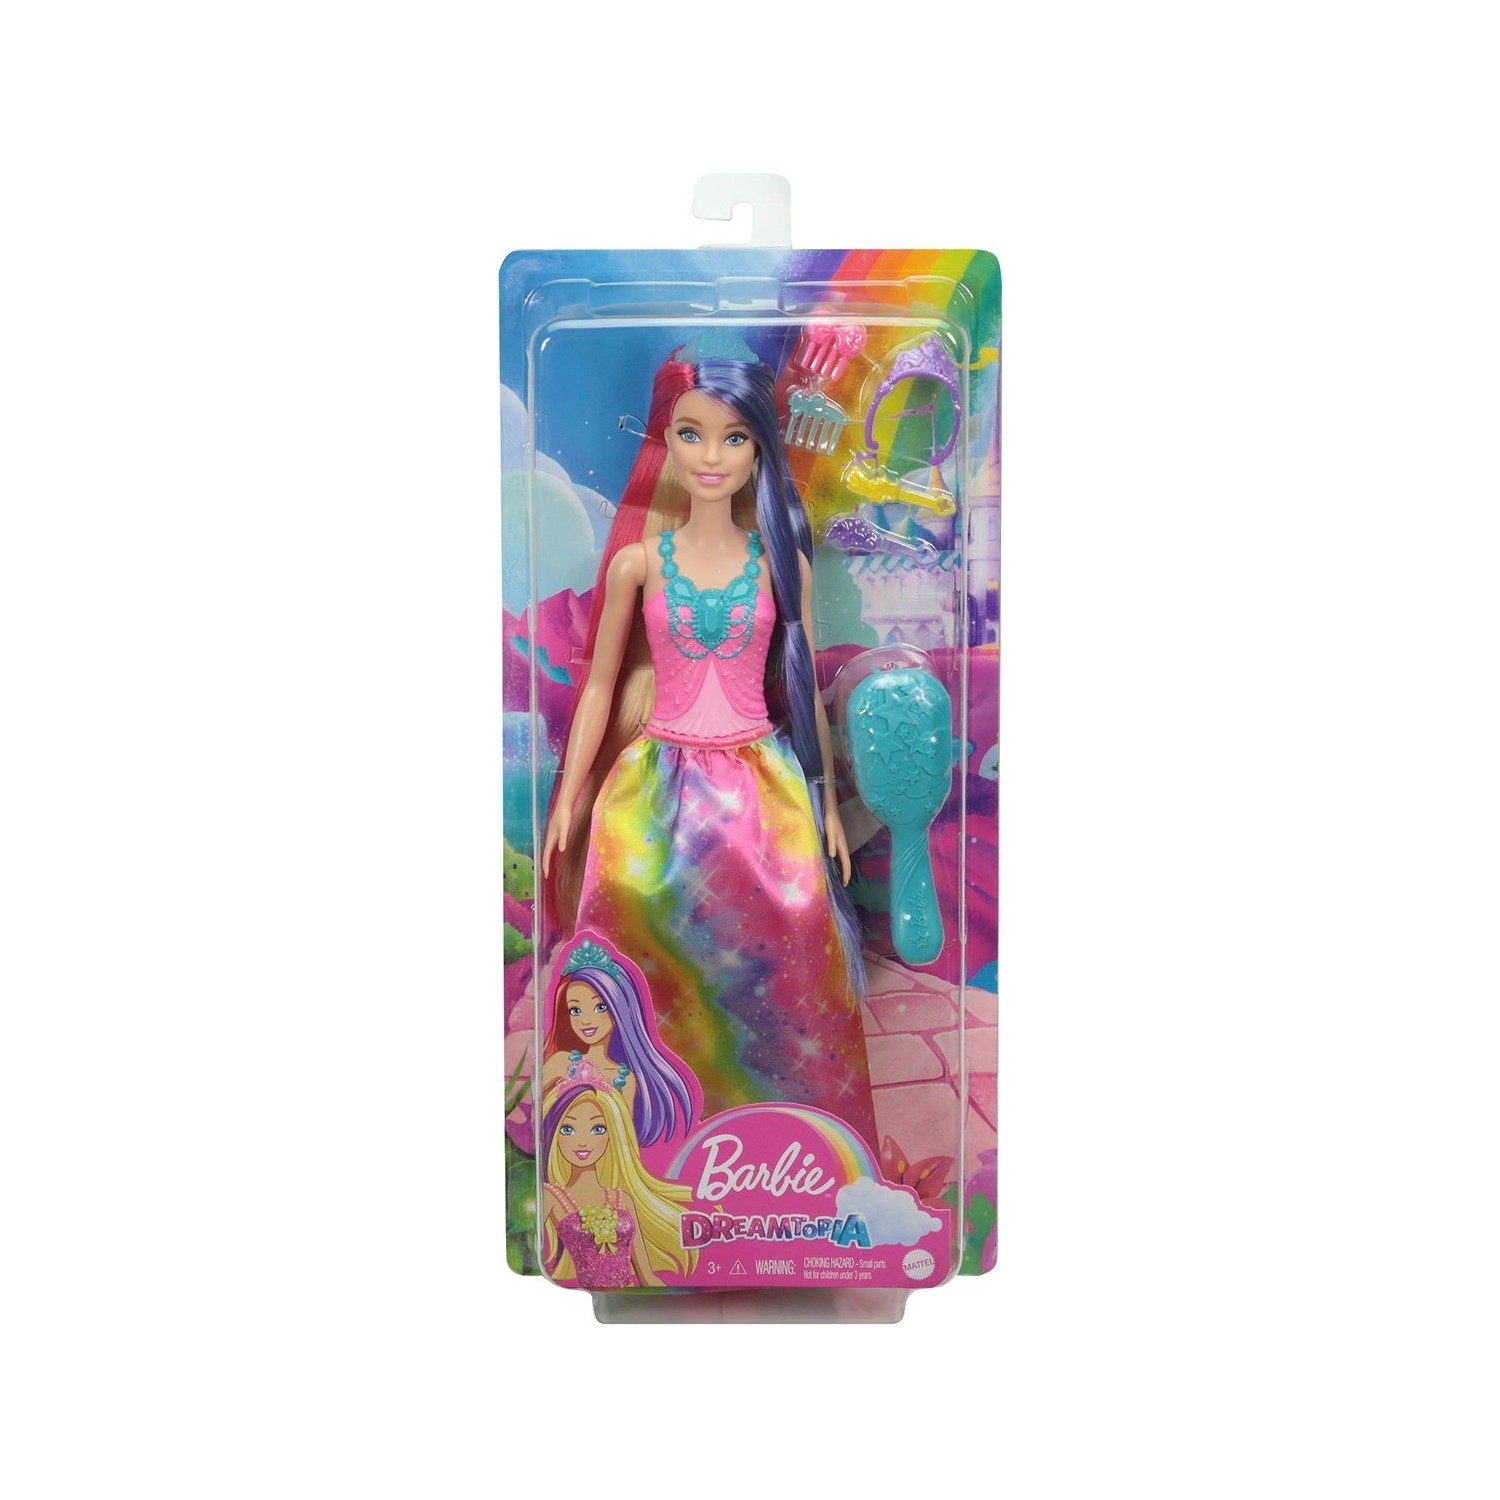 Кукла Barbie Barbie Dreamtopia Dreamland GTF37 куклы barbie русалки dreamtopia hgr09